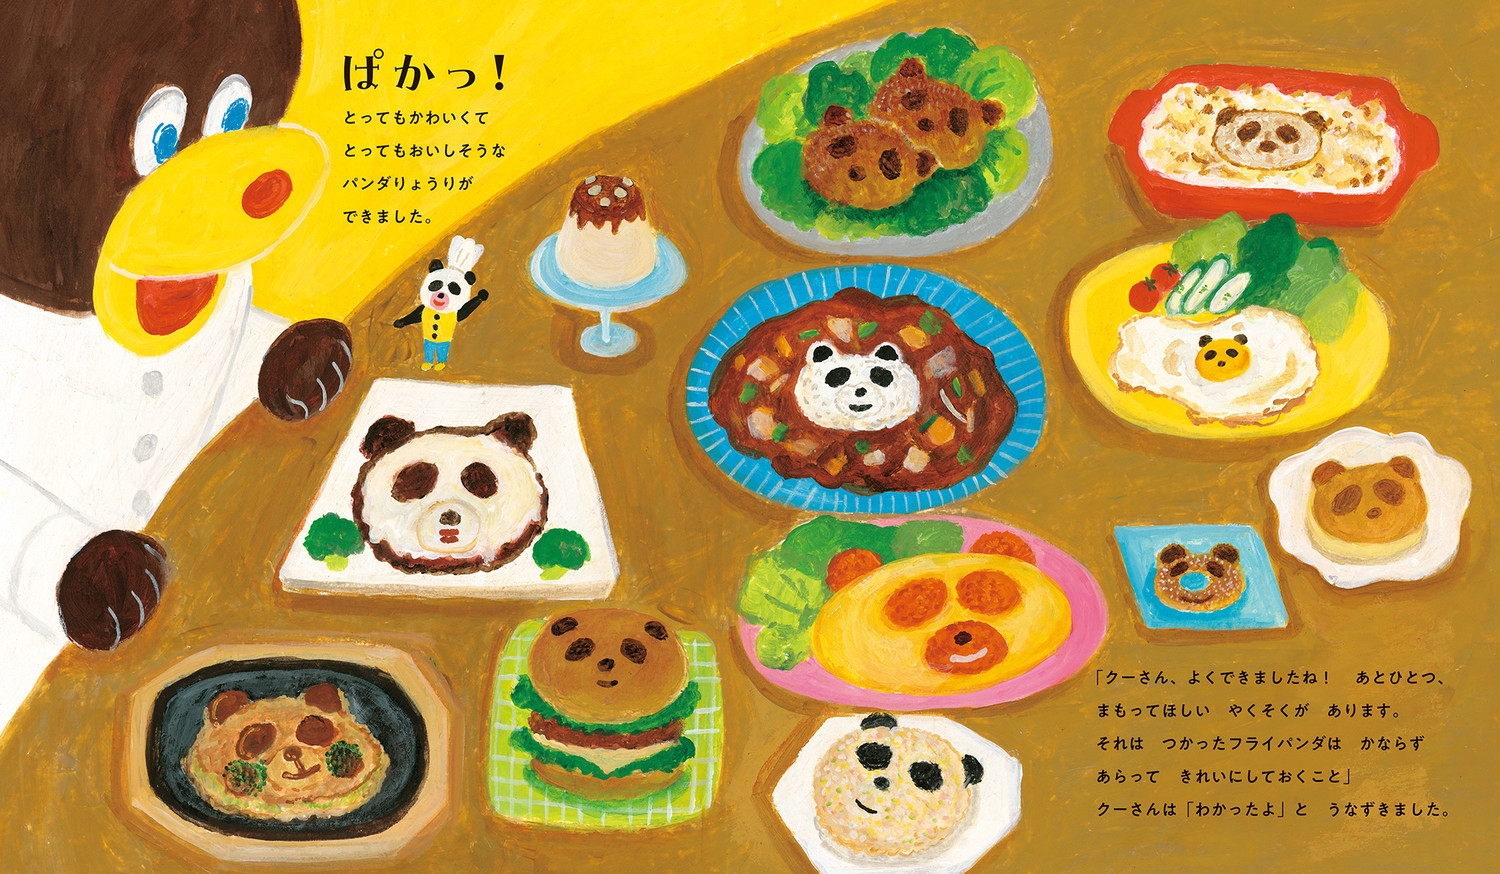 絵本『パンどろぼう』の柴田ケイコさんが描く、親も子どもも料理が